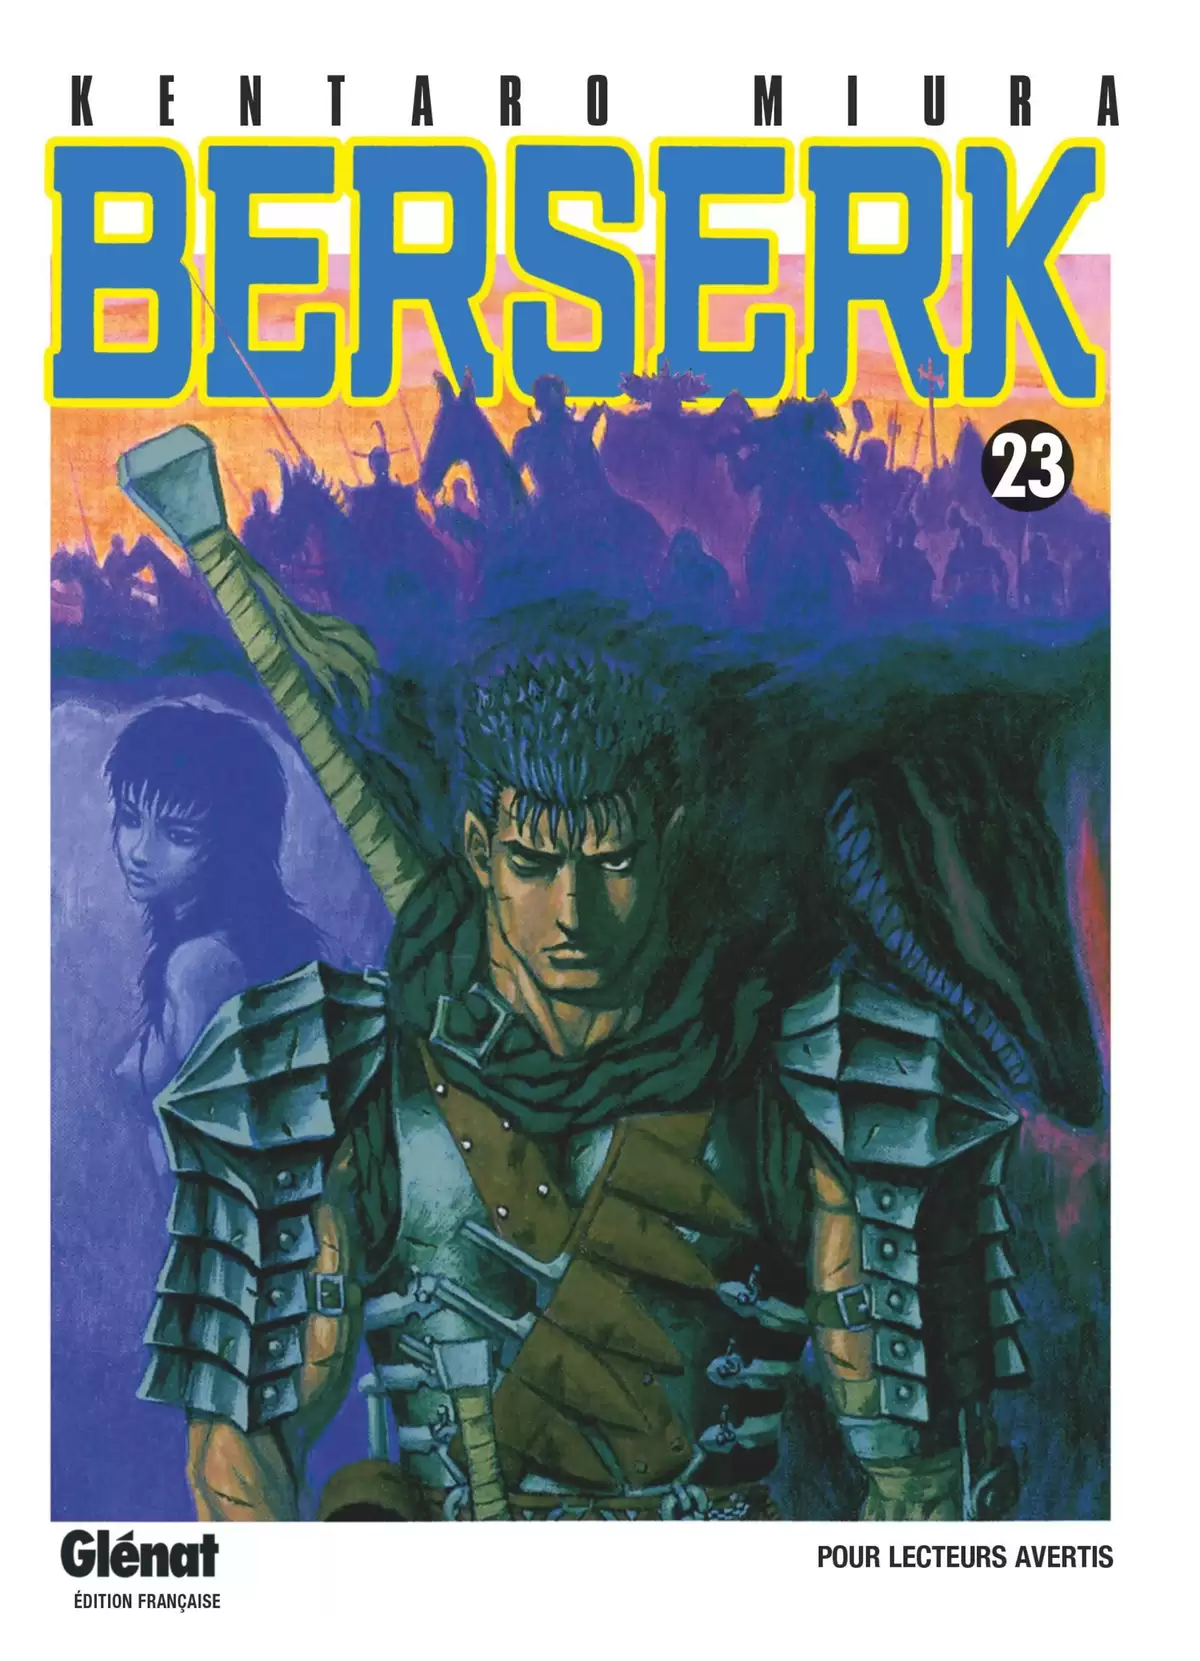 Berserk Volume 23 page 1